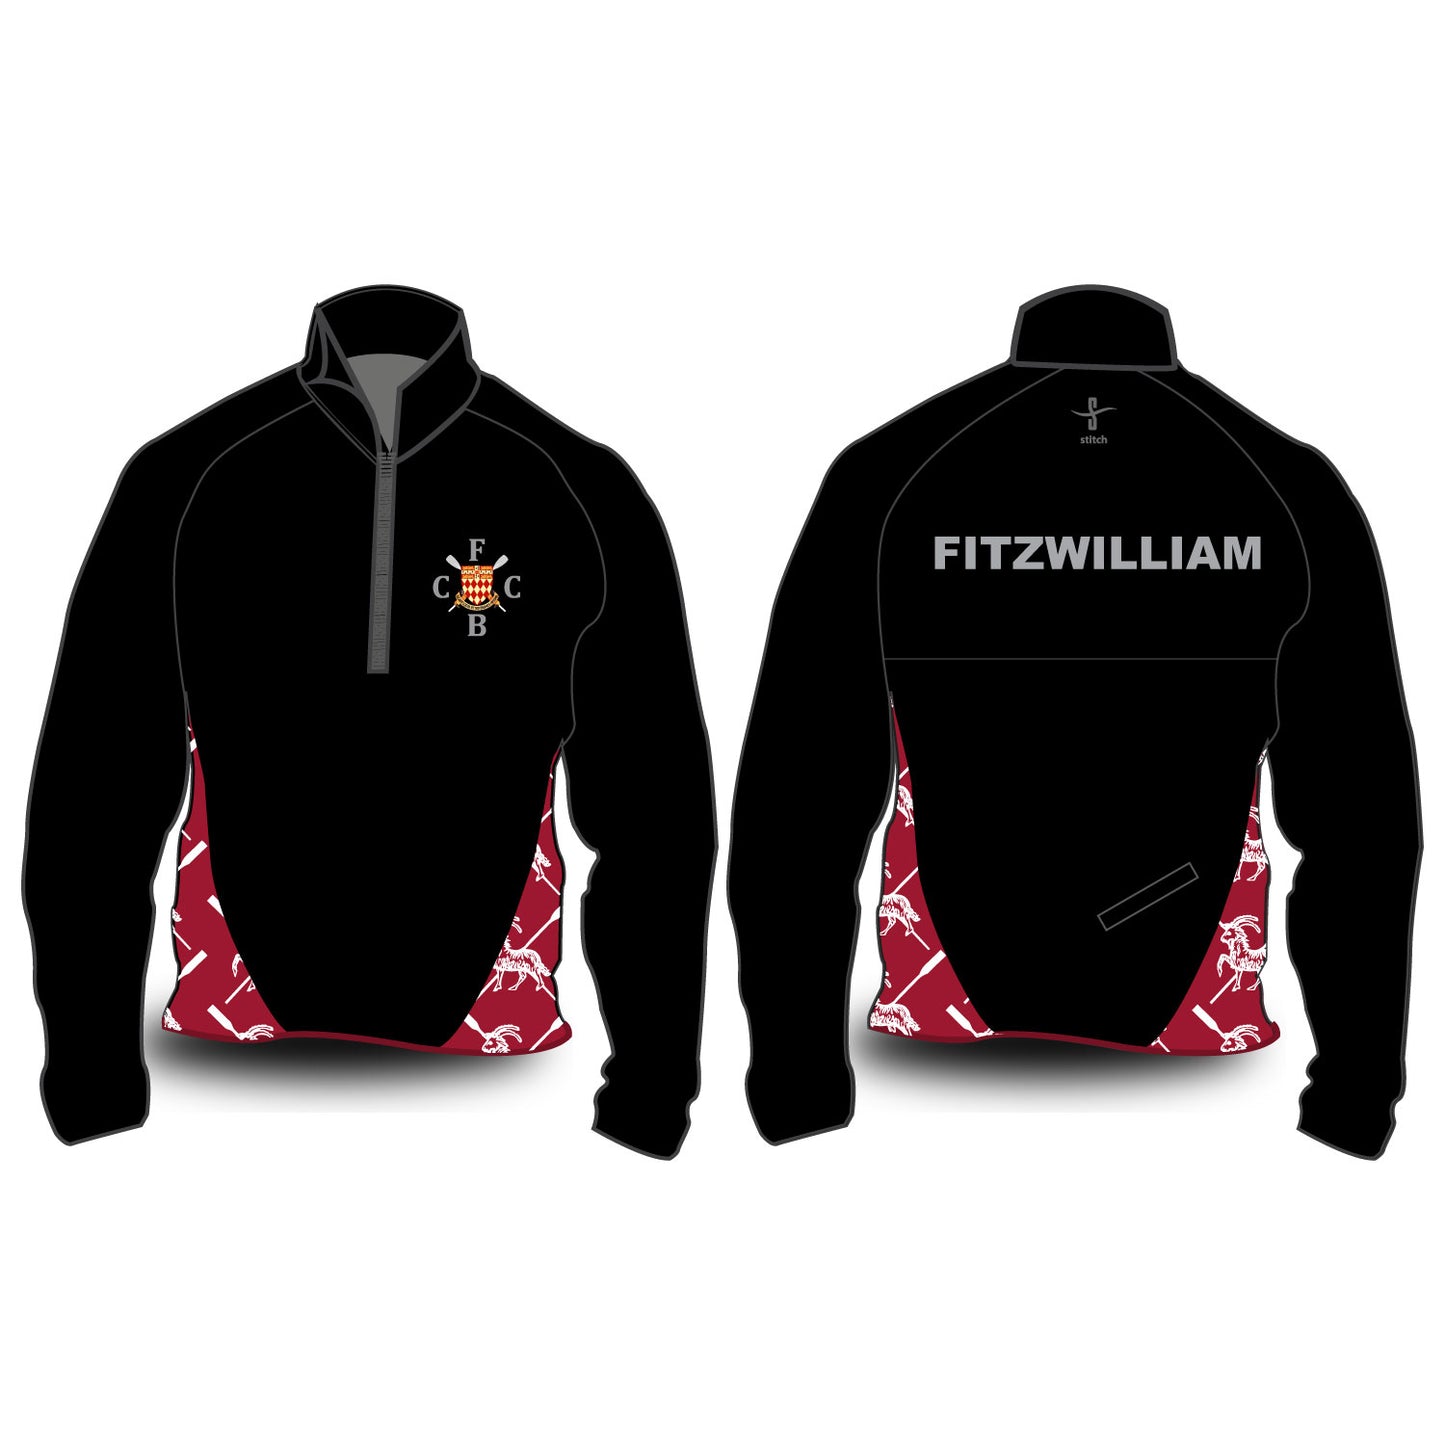 Fitzwilliam Goat Hardshell Jacket